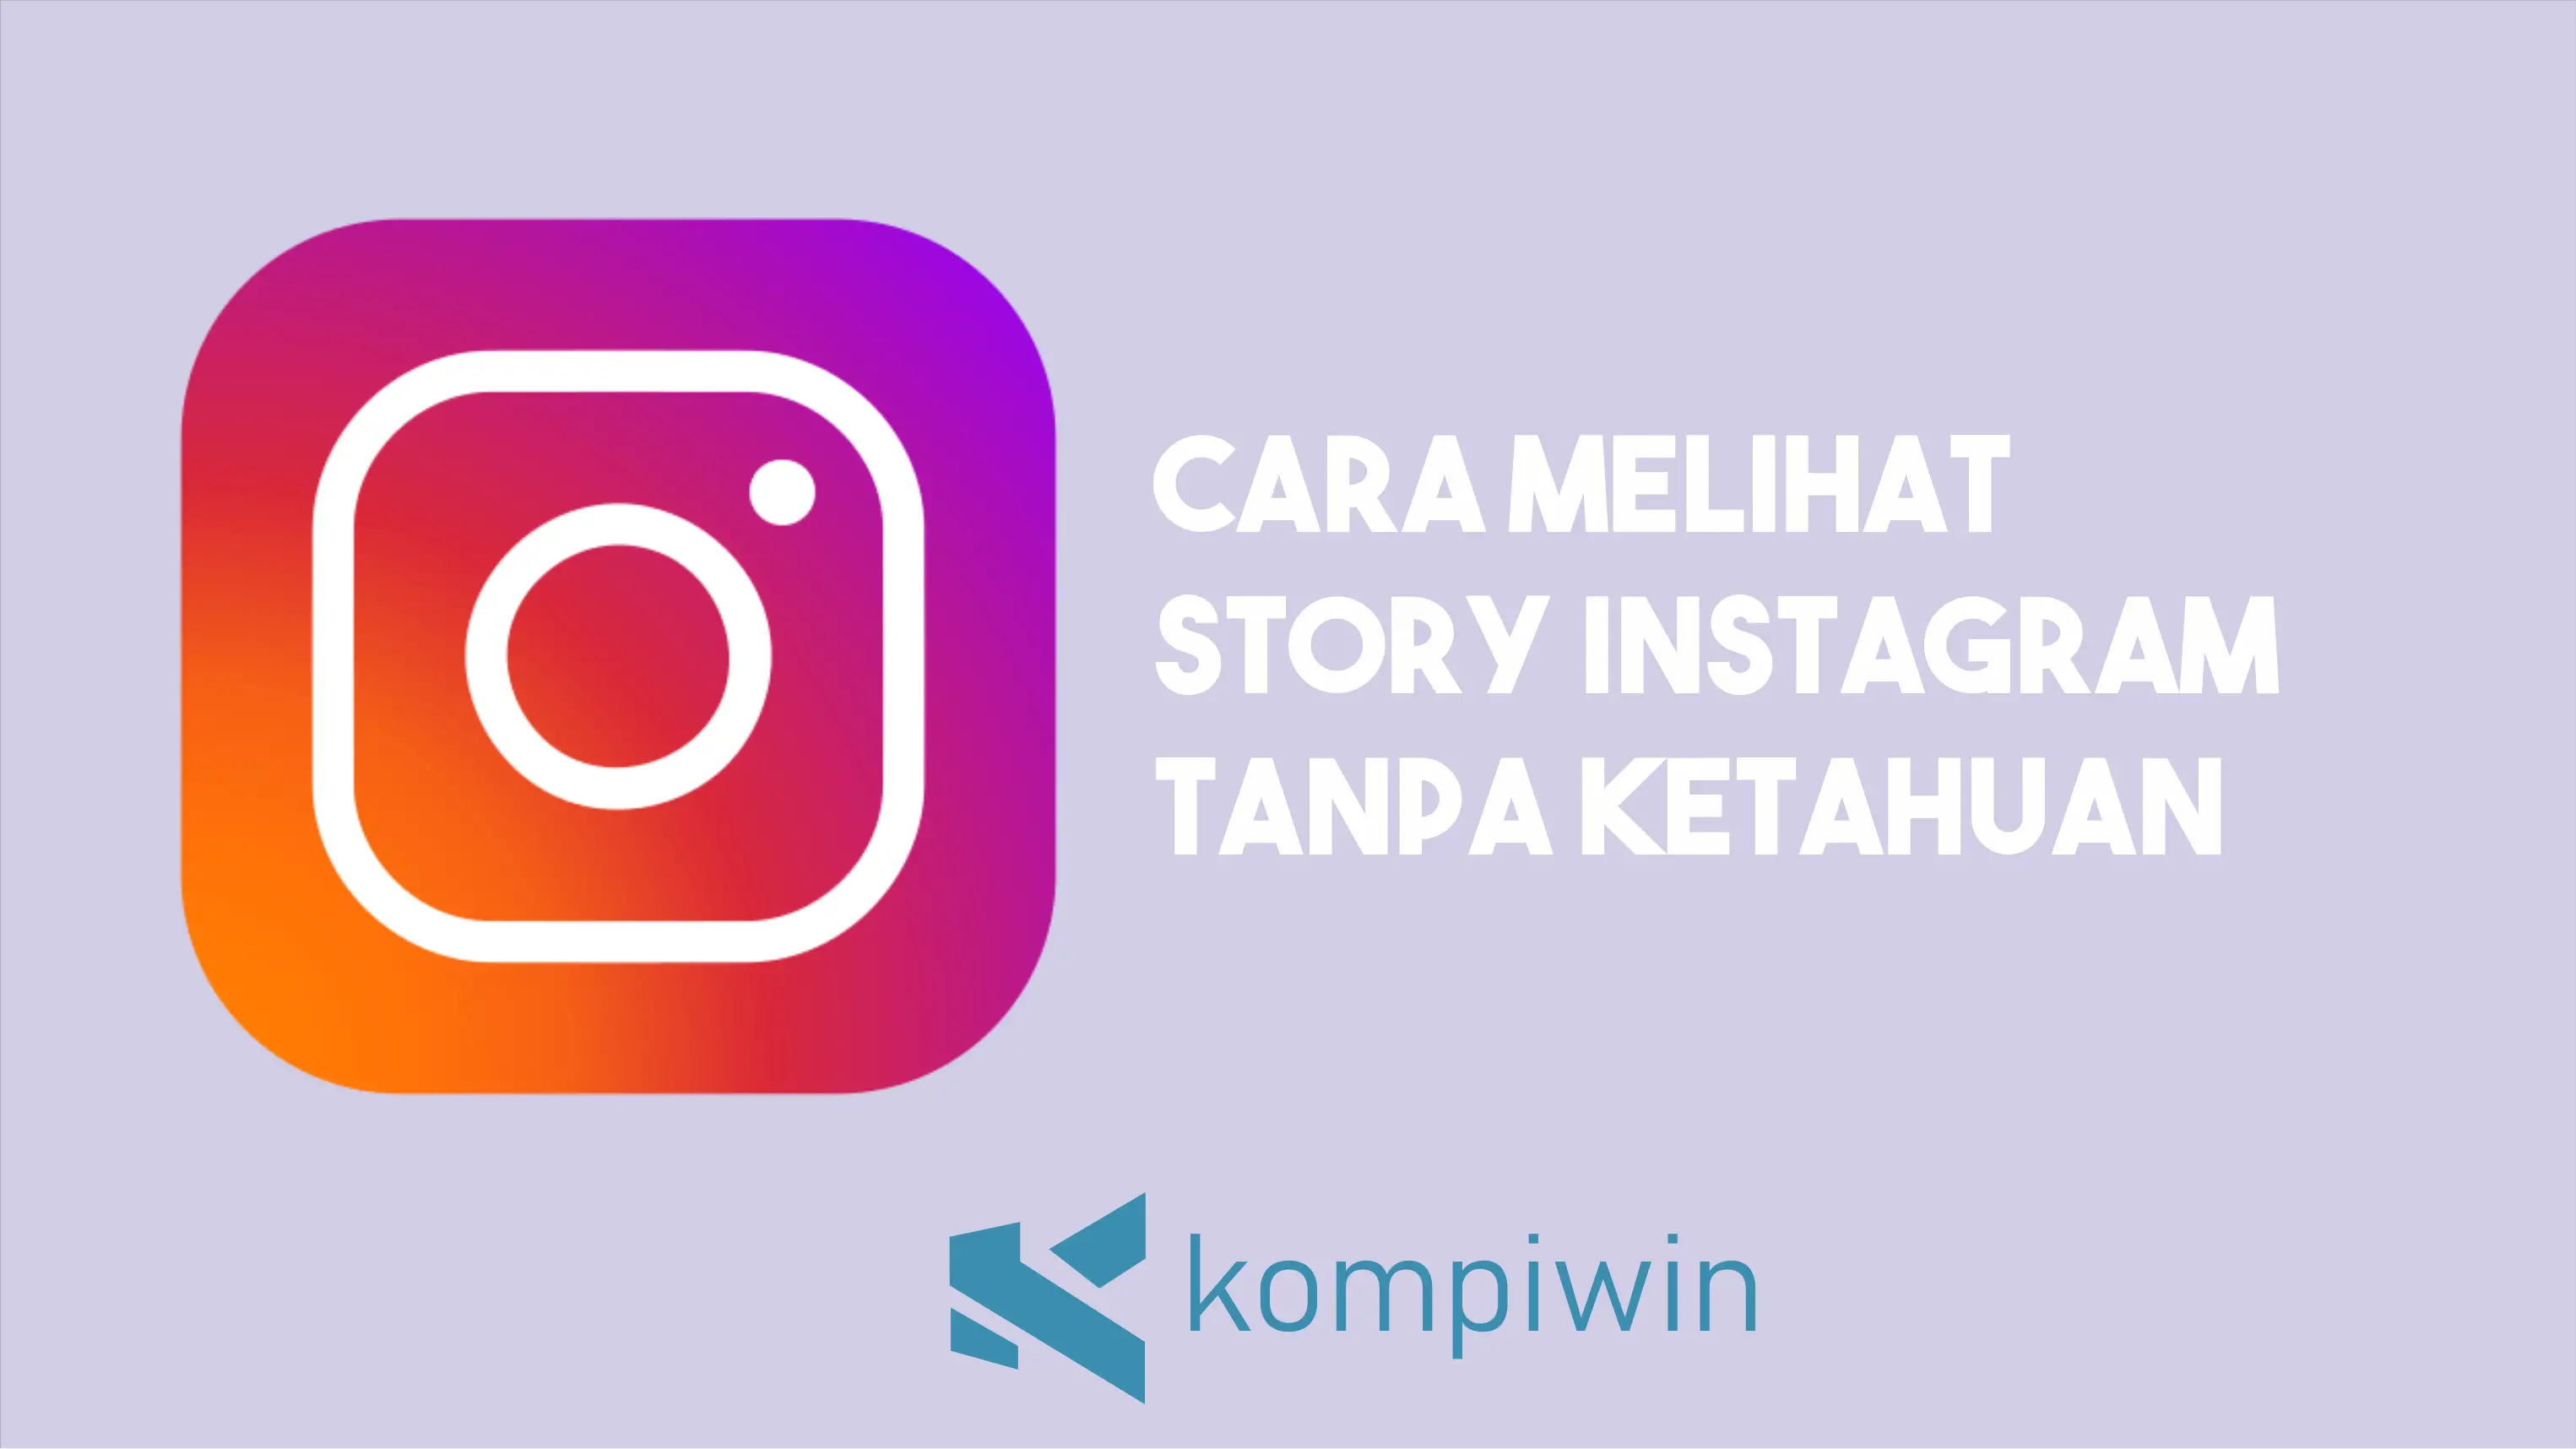 Cara Melihat Story Instagram Tanpa Diketahui 1